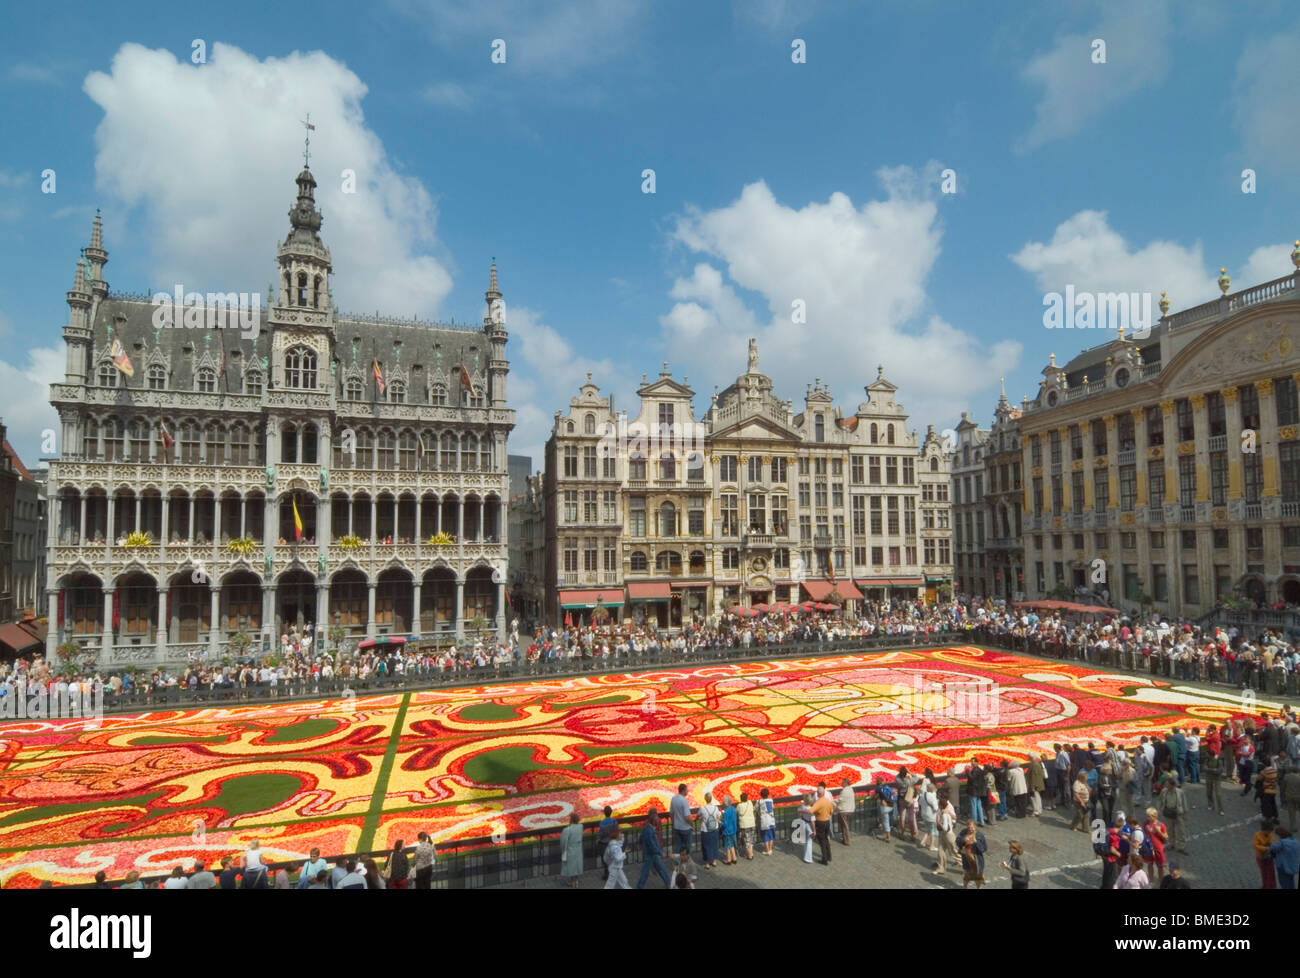 Grand Place Bruxelles montrant le Musée et le tapis de fleurs art déco Bruxelles Belgique eu Europe Banque D'Images